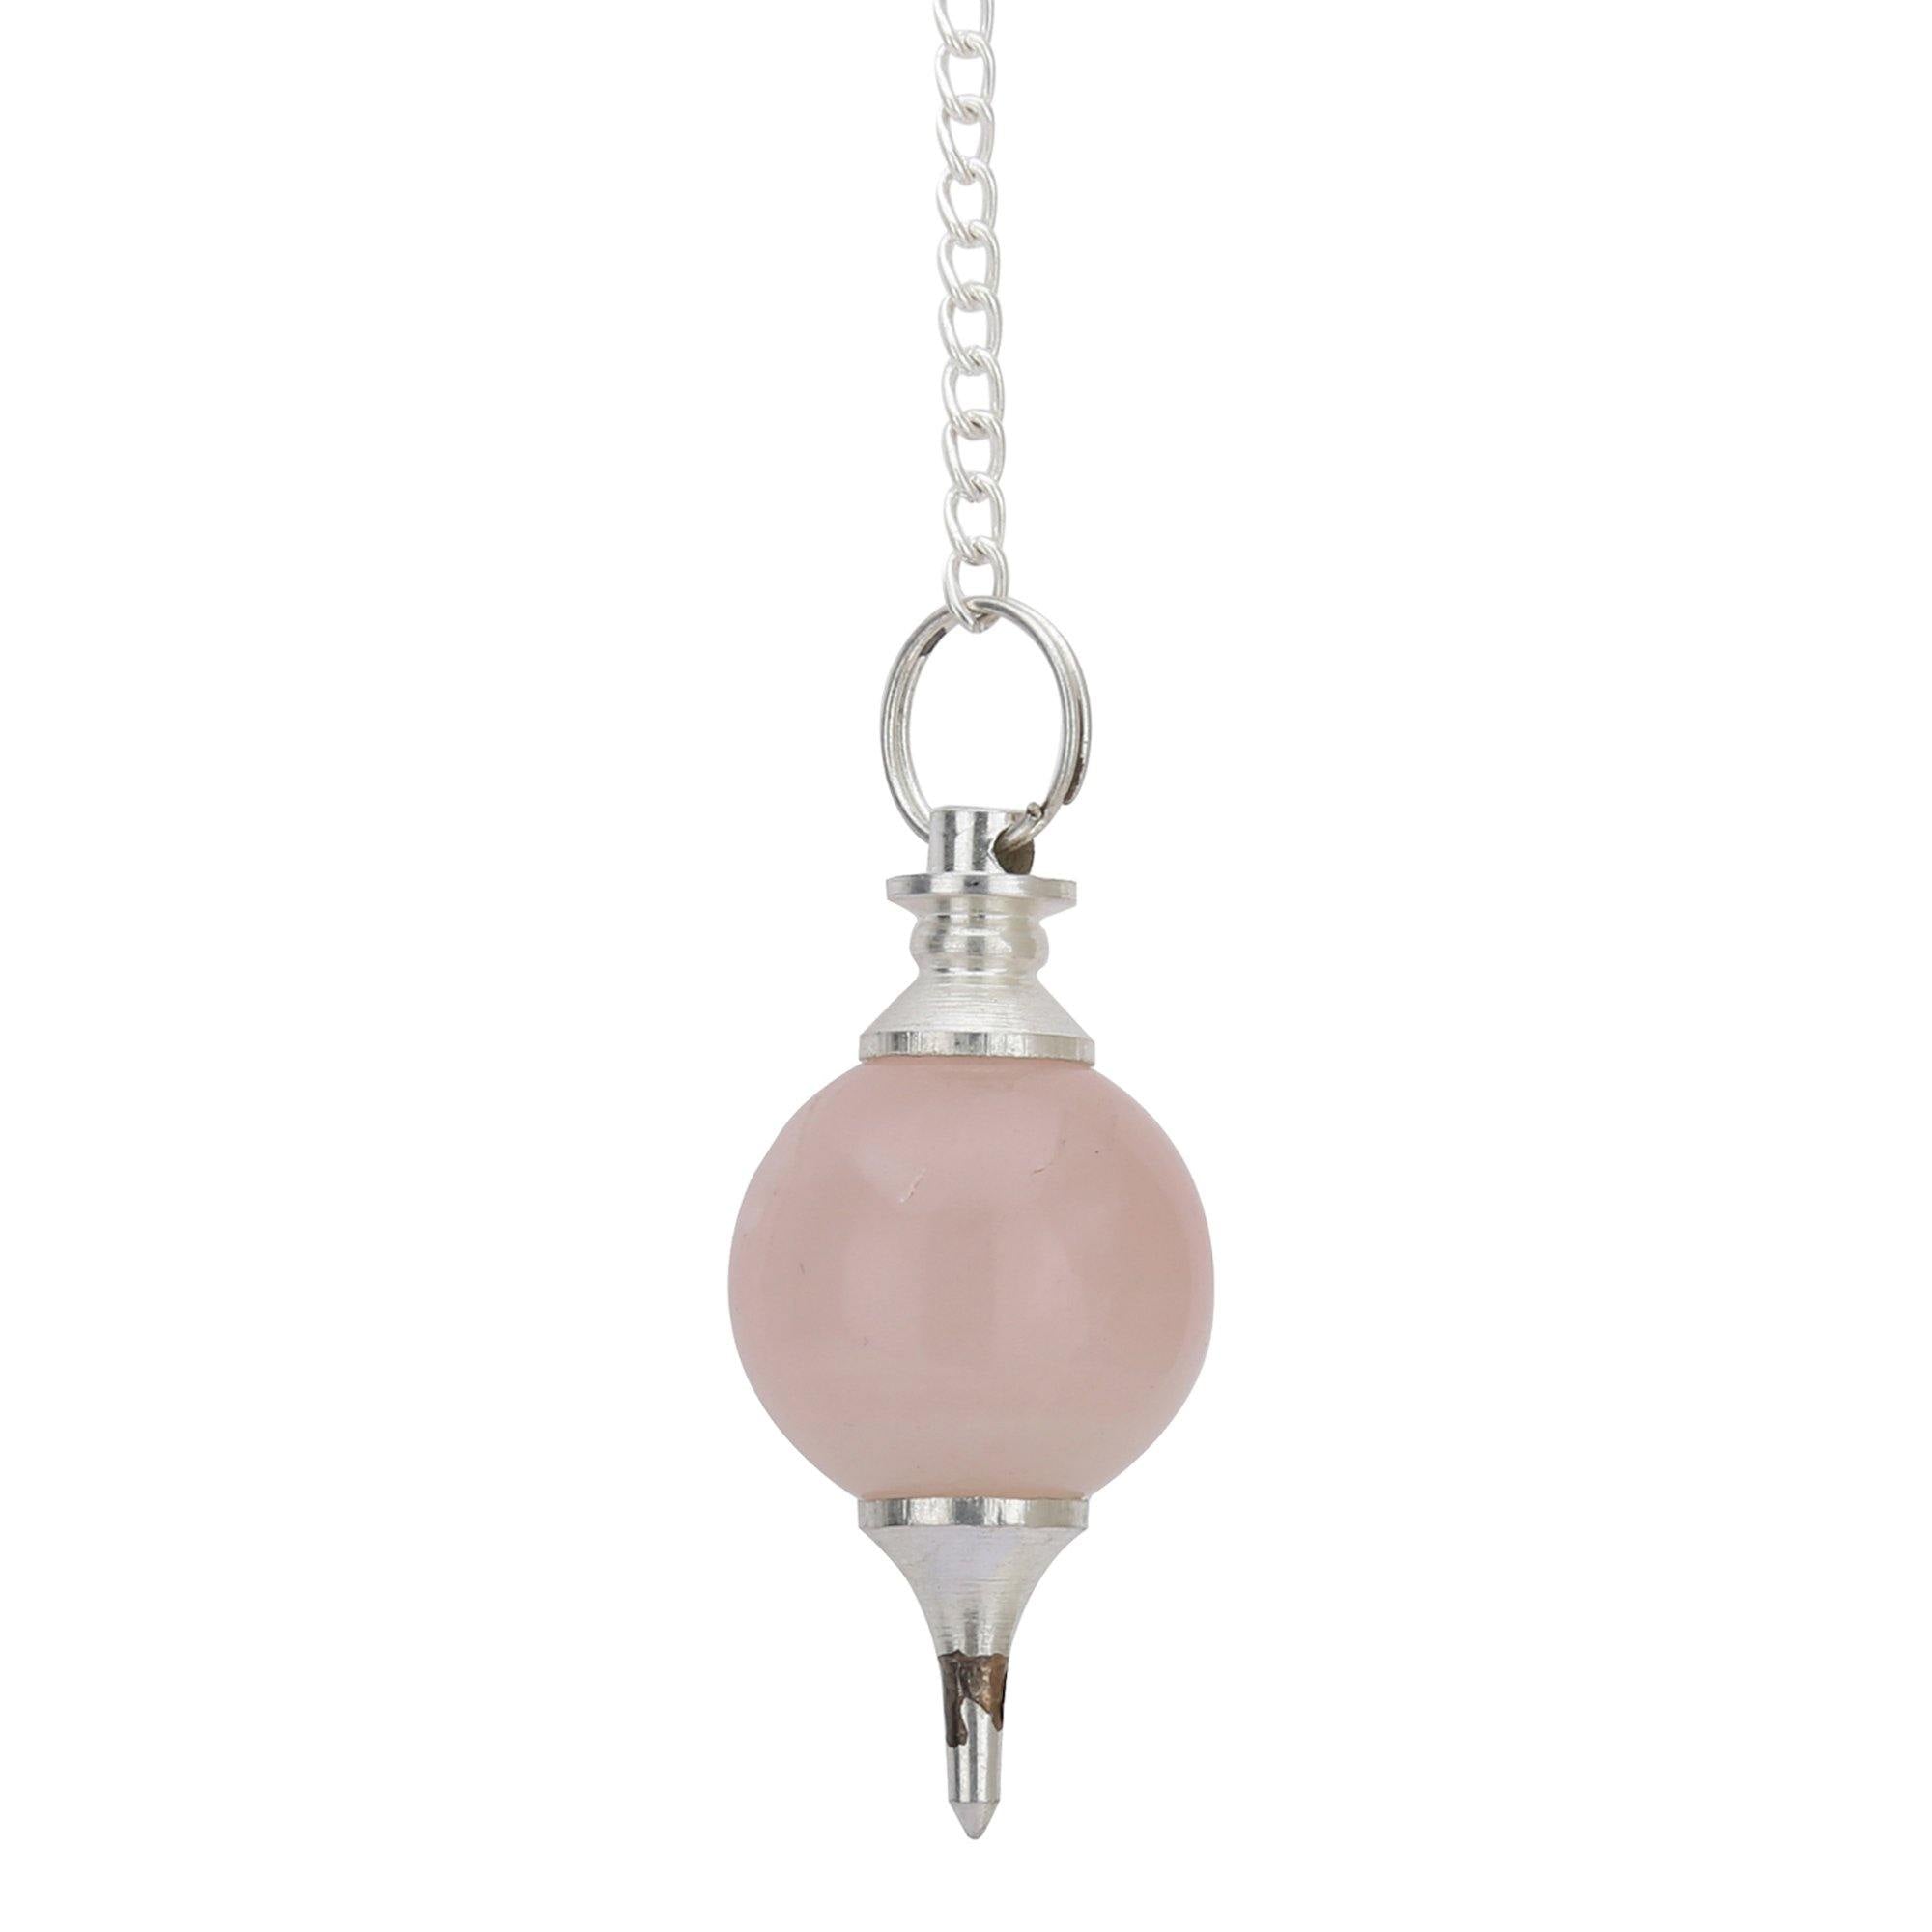 Healing Crystals - Wholesale Rose Quartz Sphere Pendulum